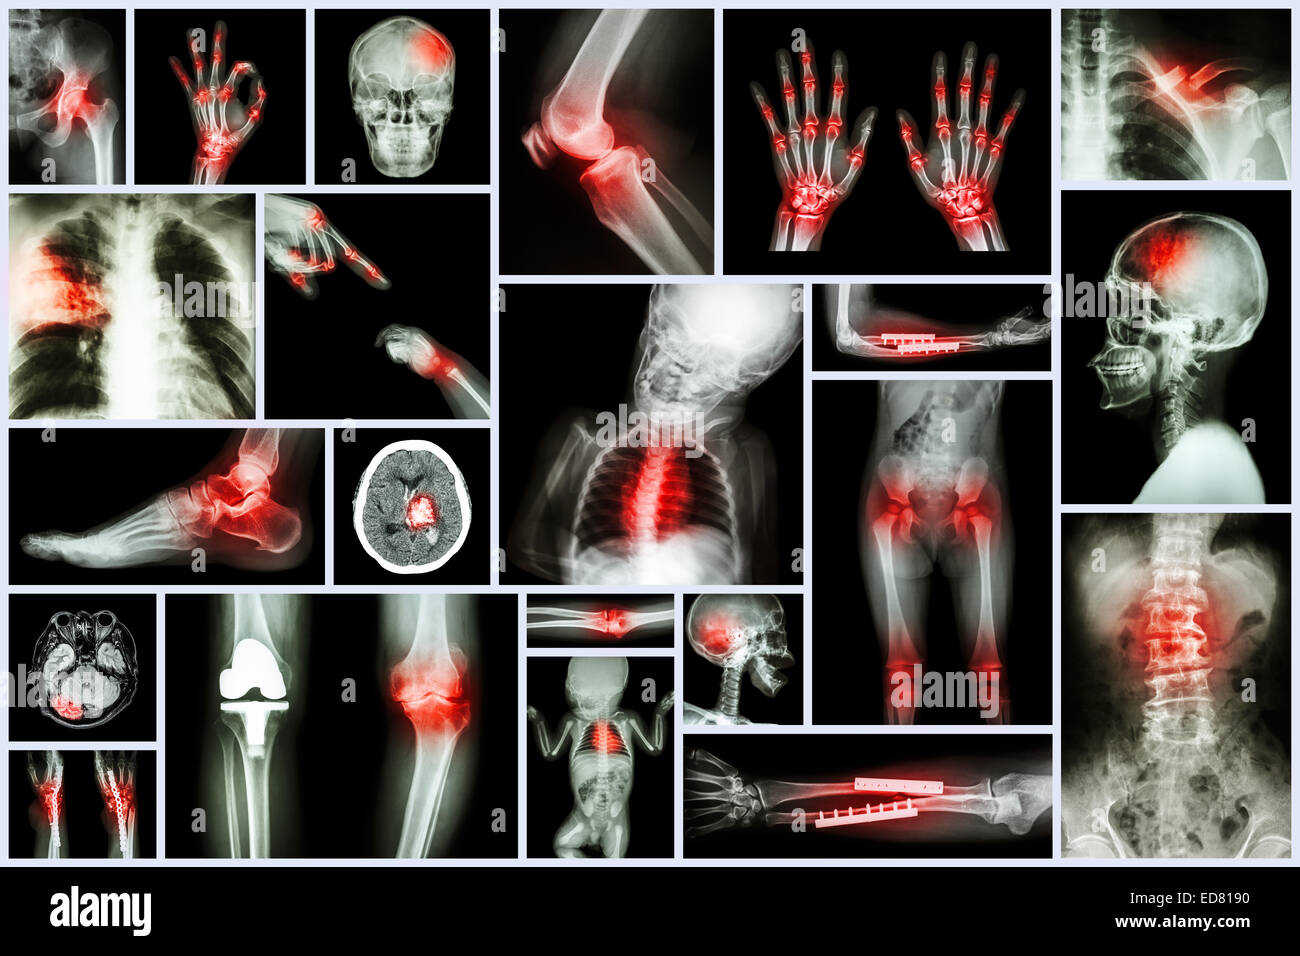 Sammlung Röntgen, mehrere menschliche Organ & orthopädische Chirurgie & mehrere Krankheit (Lungentuberkulose, Gicht, rheumatoide arth Stockfoto